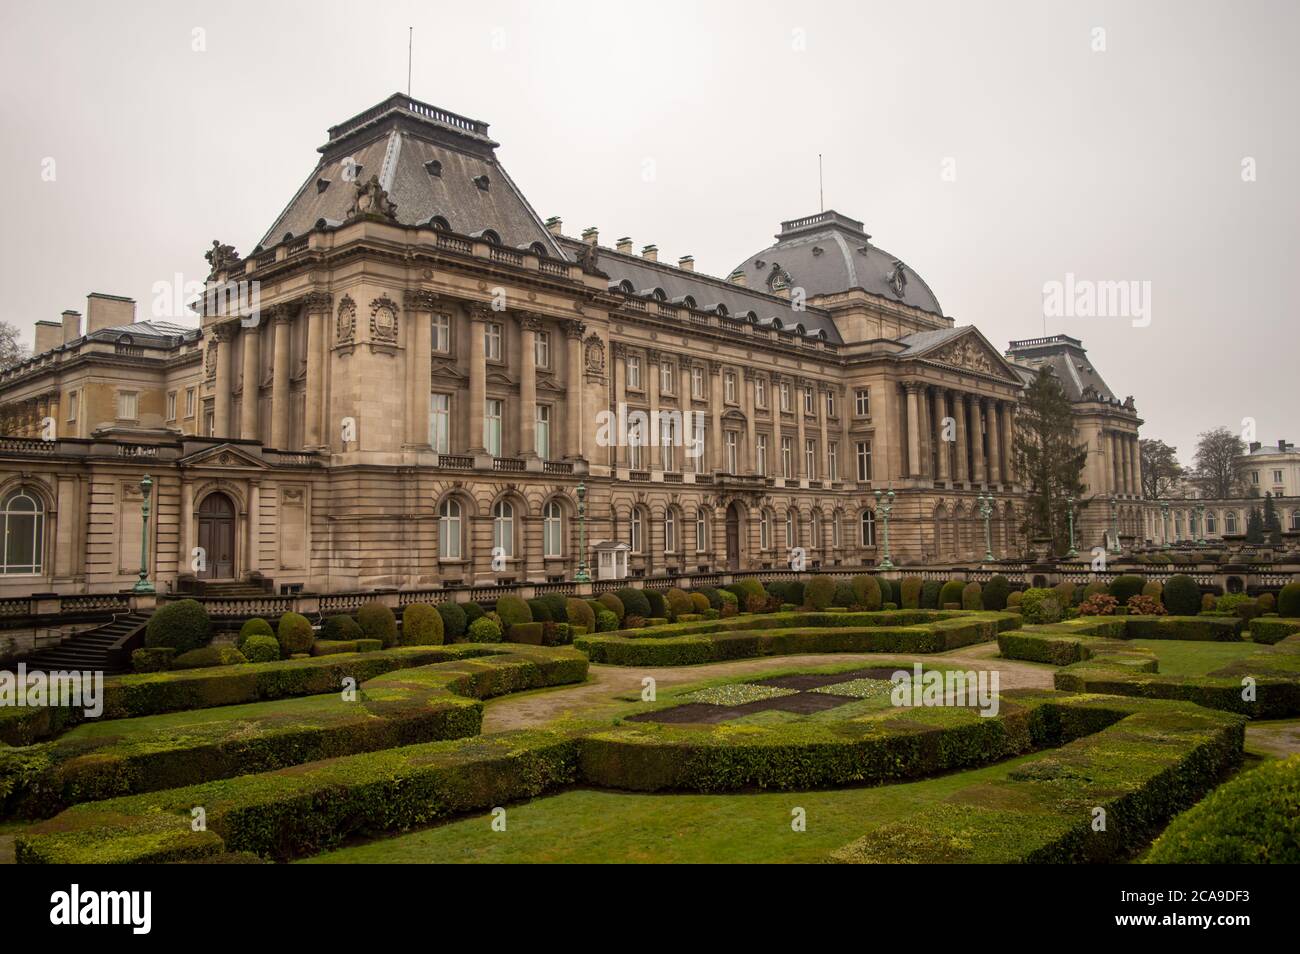 BRUXELLES, BELGIO - 30 DICEMBRE 2018: Palazzo reale di Bruxelles, periodo invernale torbido a Bruxelles, Belgio il 30 dicembre 2018. Foto Stock